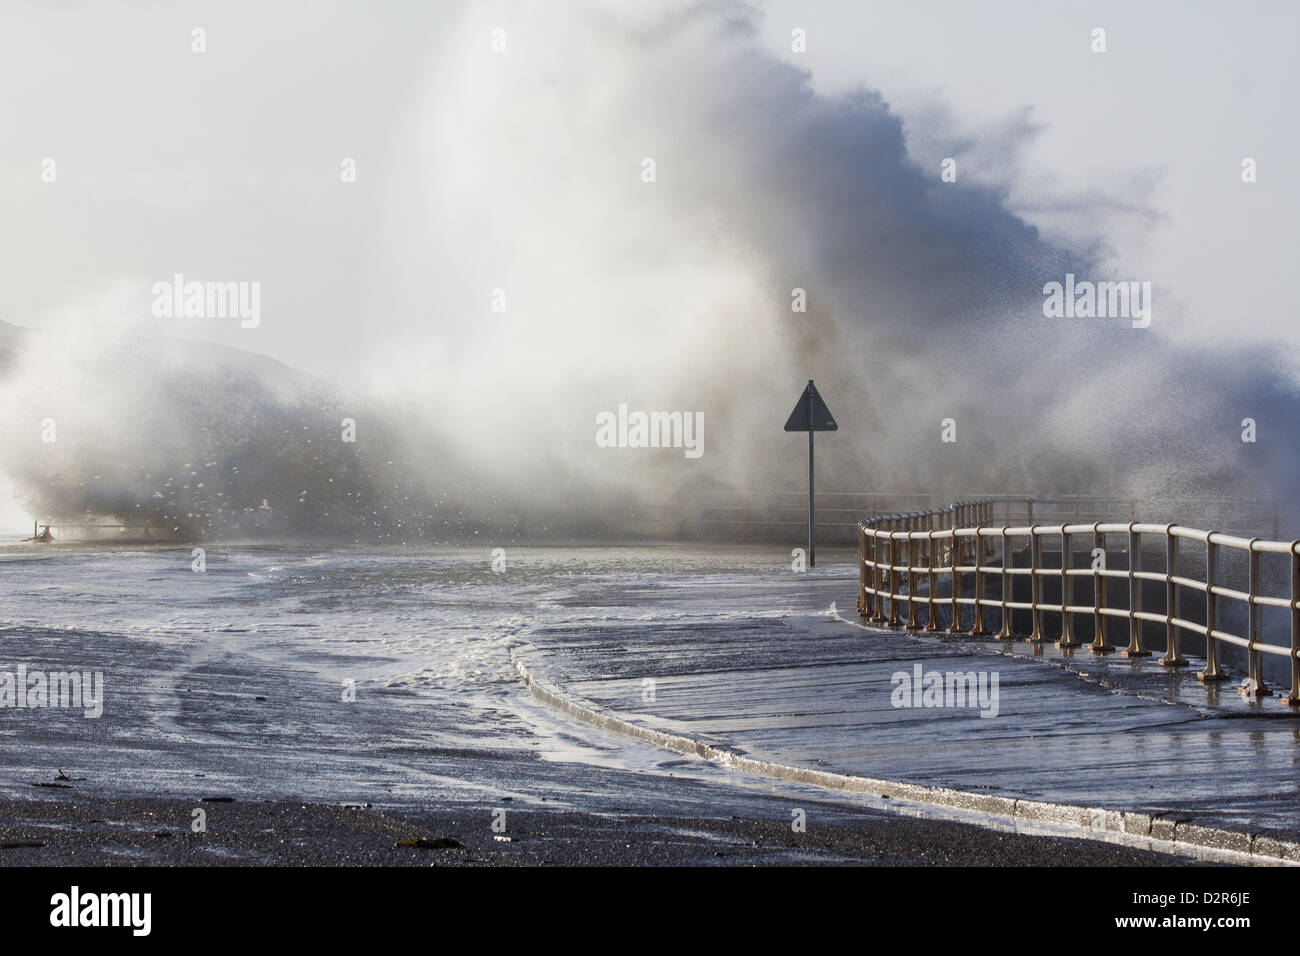 Aberystwyth, Wales, UK. 31. Januar 2013.    Spektakuläre Wellen verursacht durch starke Winde und eine Flut Peitsche Aberystwyth Promenade.  Bildnachweis: atgof.co / Alamy Live News Stockfoto